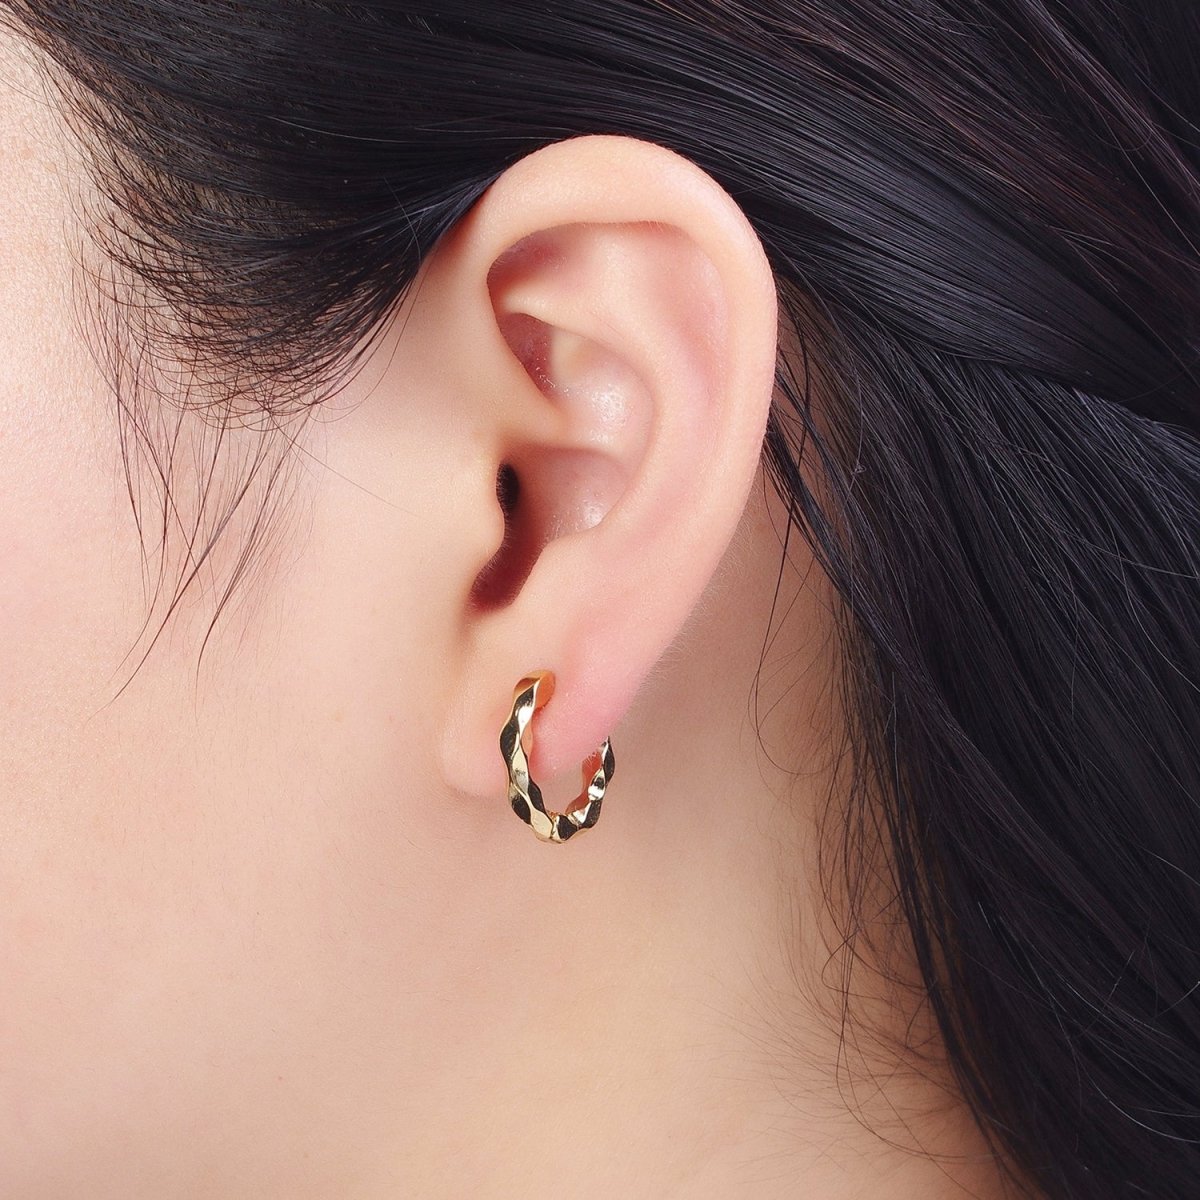 16mm Flat Twist Geometric Gold Huggie Hoops Earrings | X-831 - DLUXCA